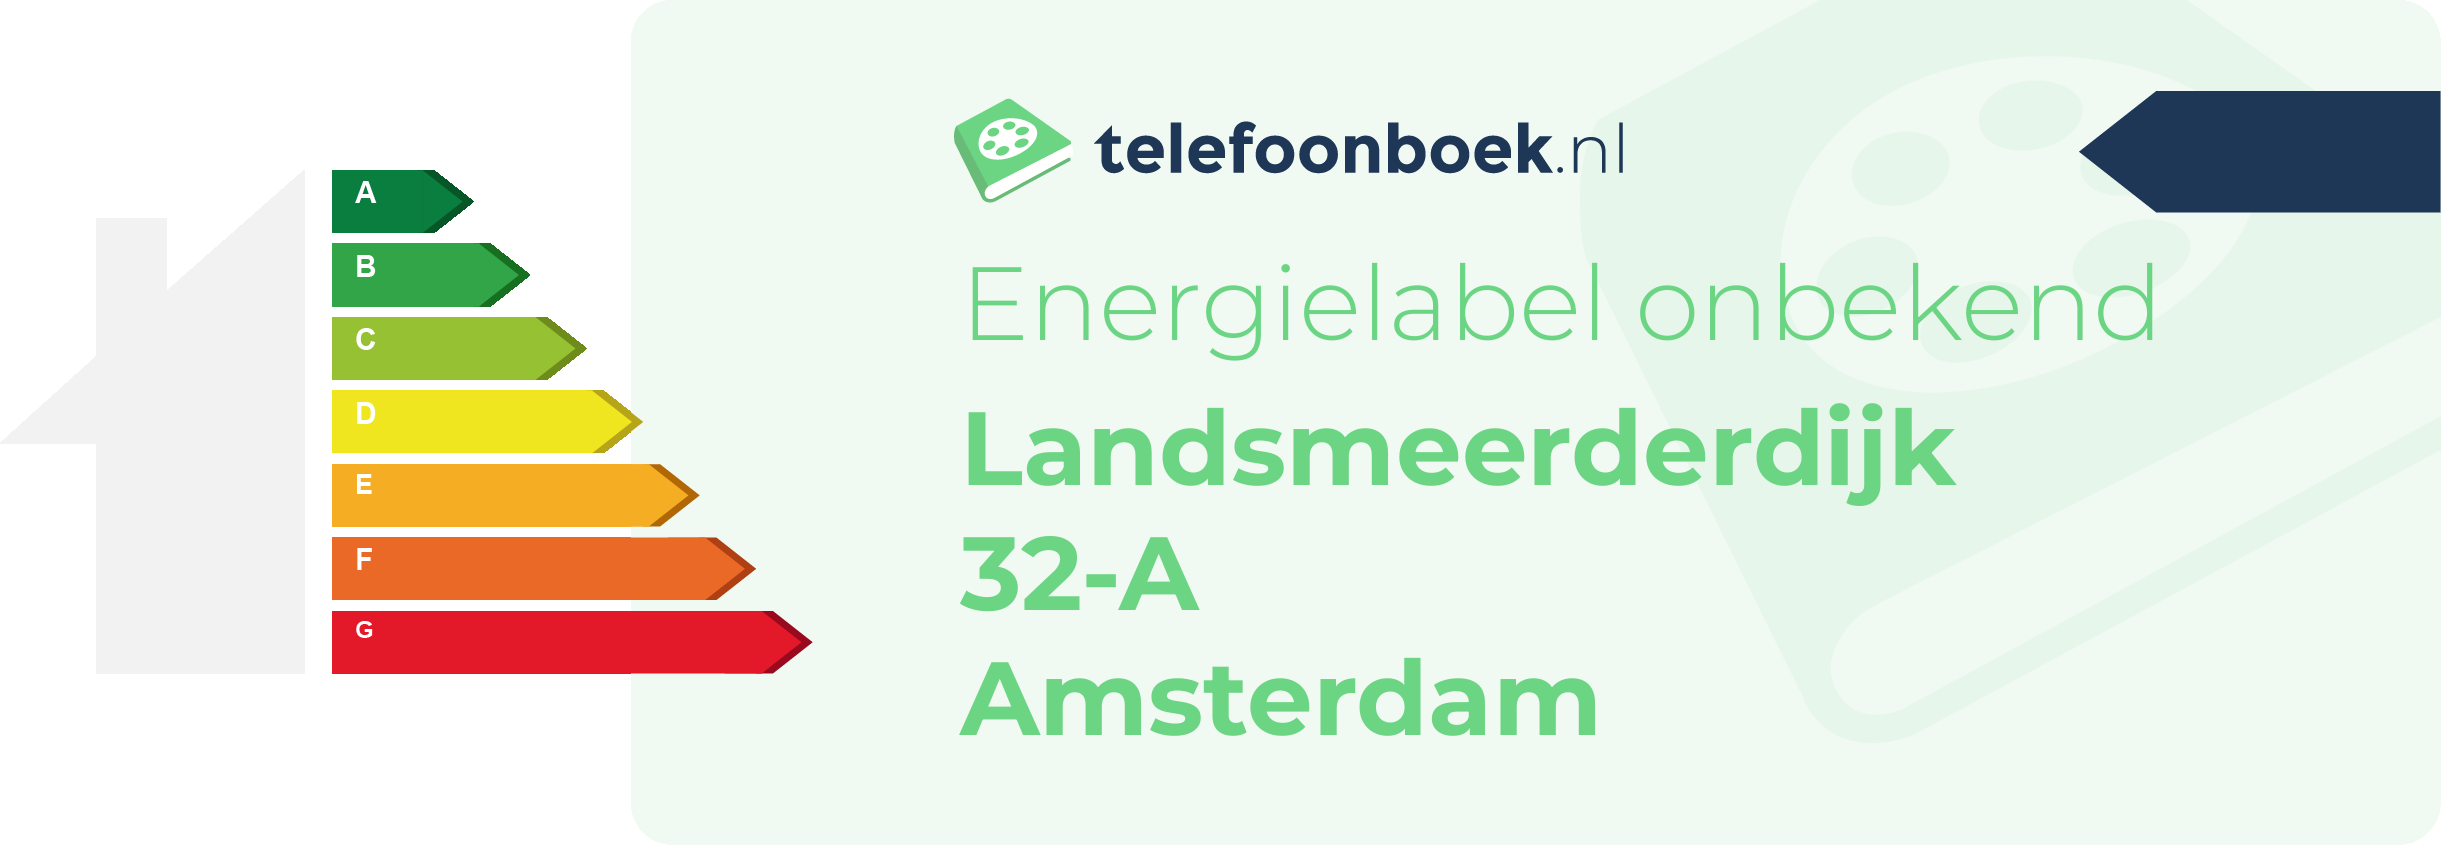 Energielabel Landsmeerderdijk 32-A Amsterdam